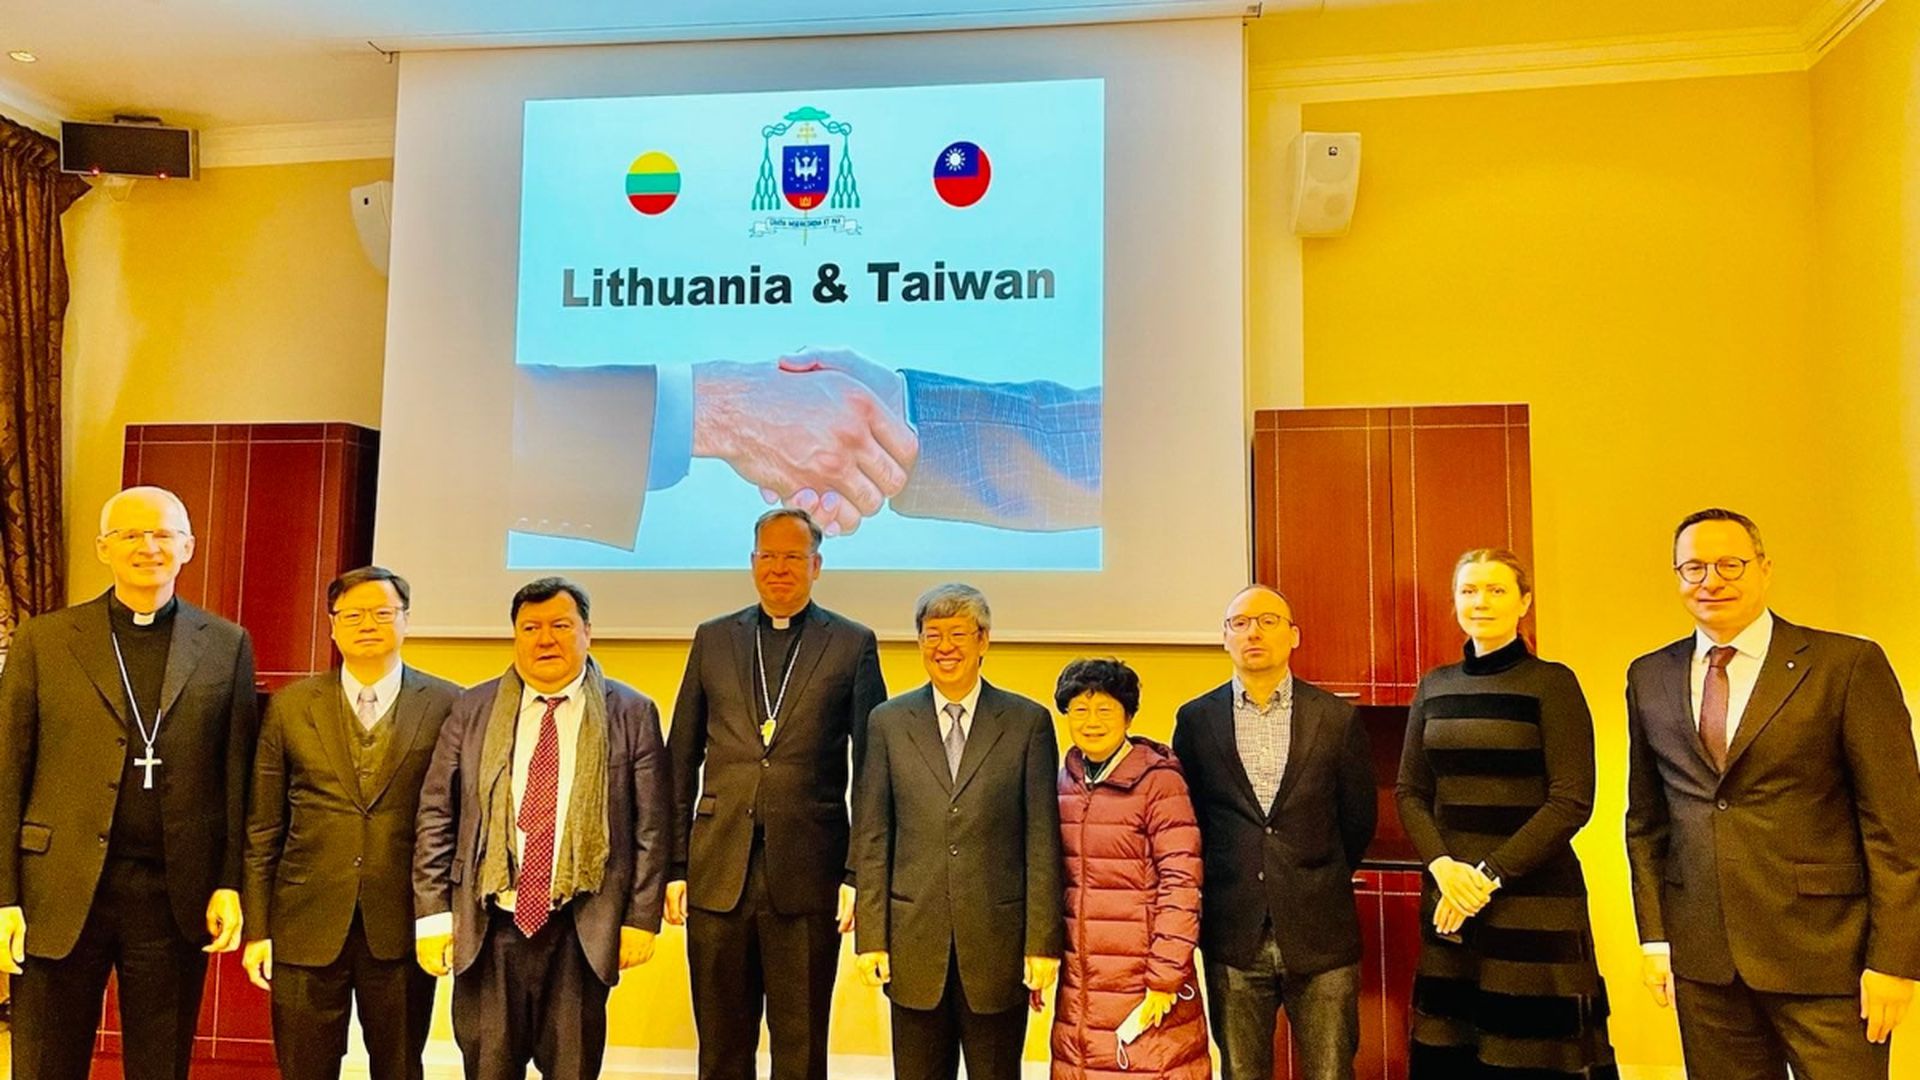 立陶宛國會過半議員發聲 支持台灣參加世衛大會 - 新聞 - Rti 中央廣播電臺